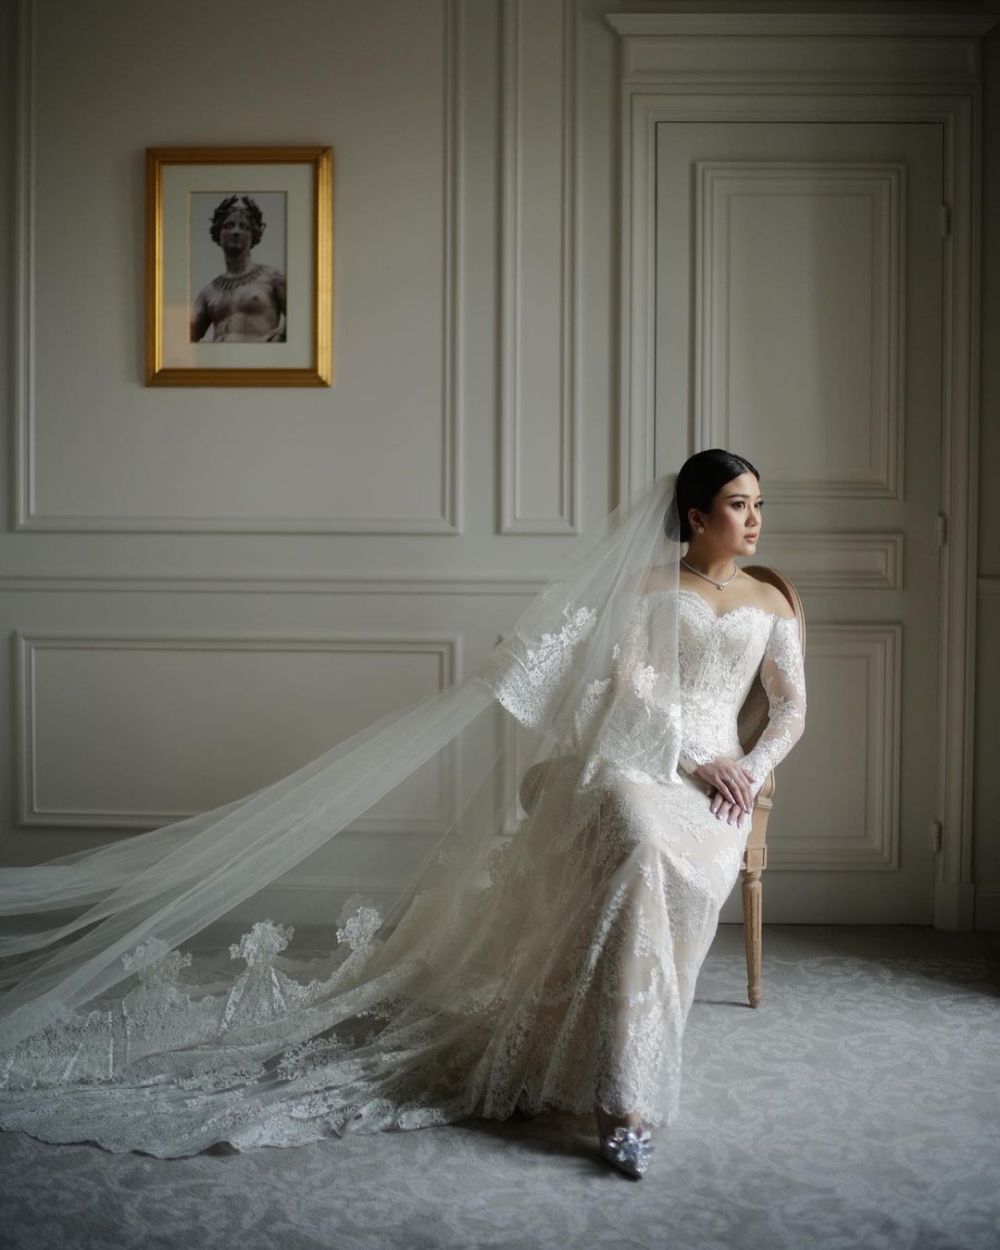 Pesona 9 anak konglomerat di pernikahan, Valencia Tanoesoedibjo pakai baju desainernya Jennifer Lopez